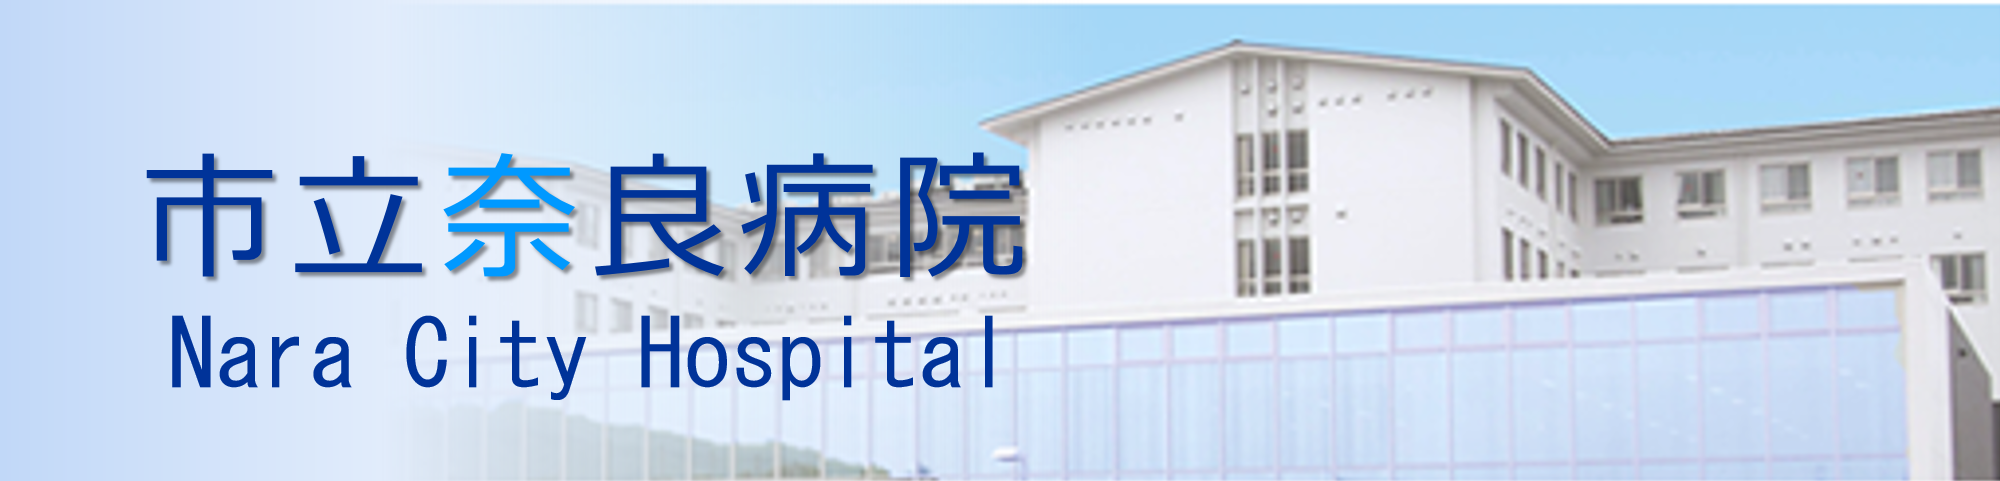 市立奈良病院